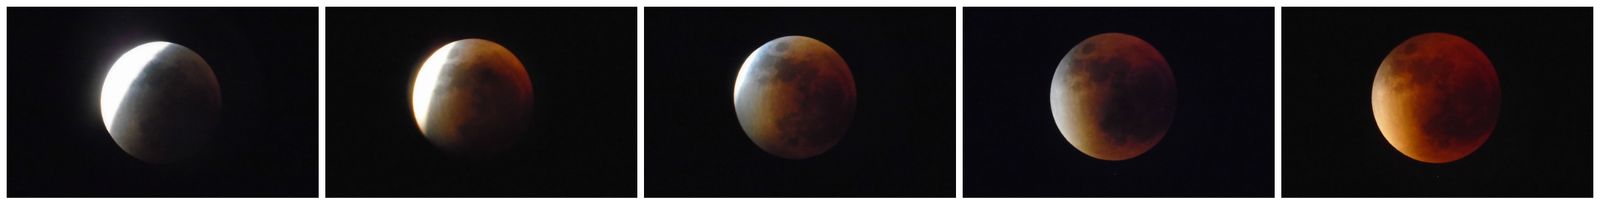 Lunar Eclipse Sequence_1